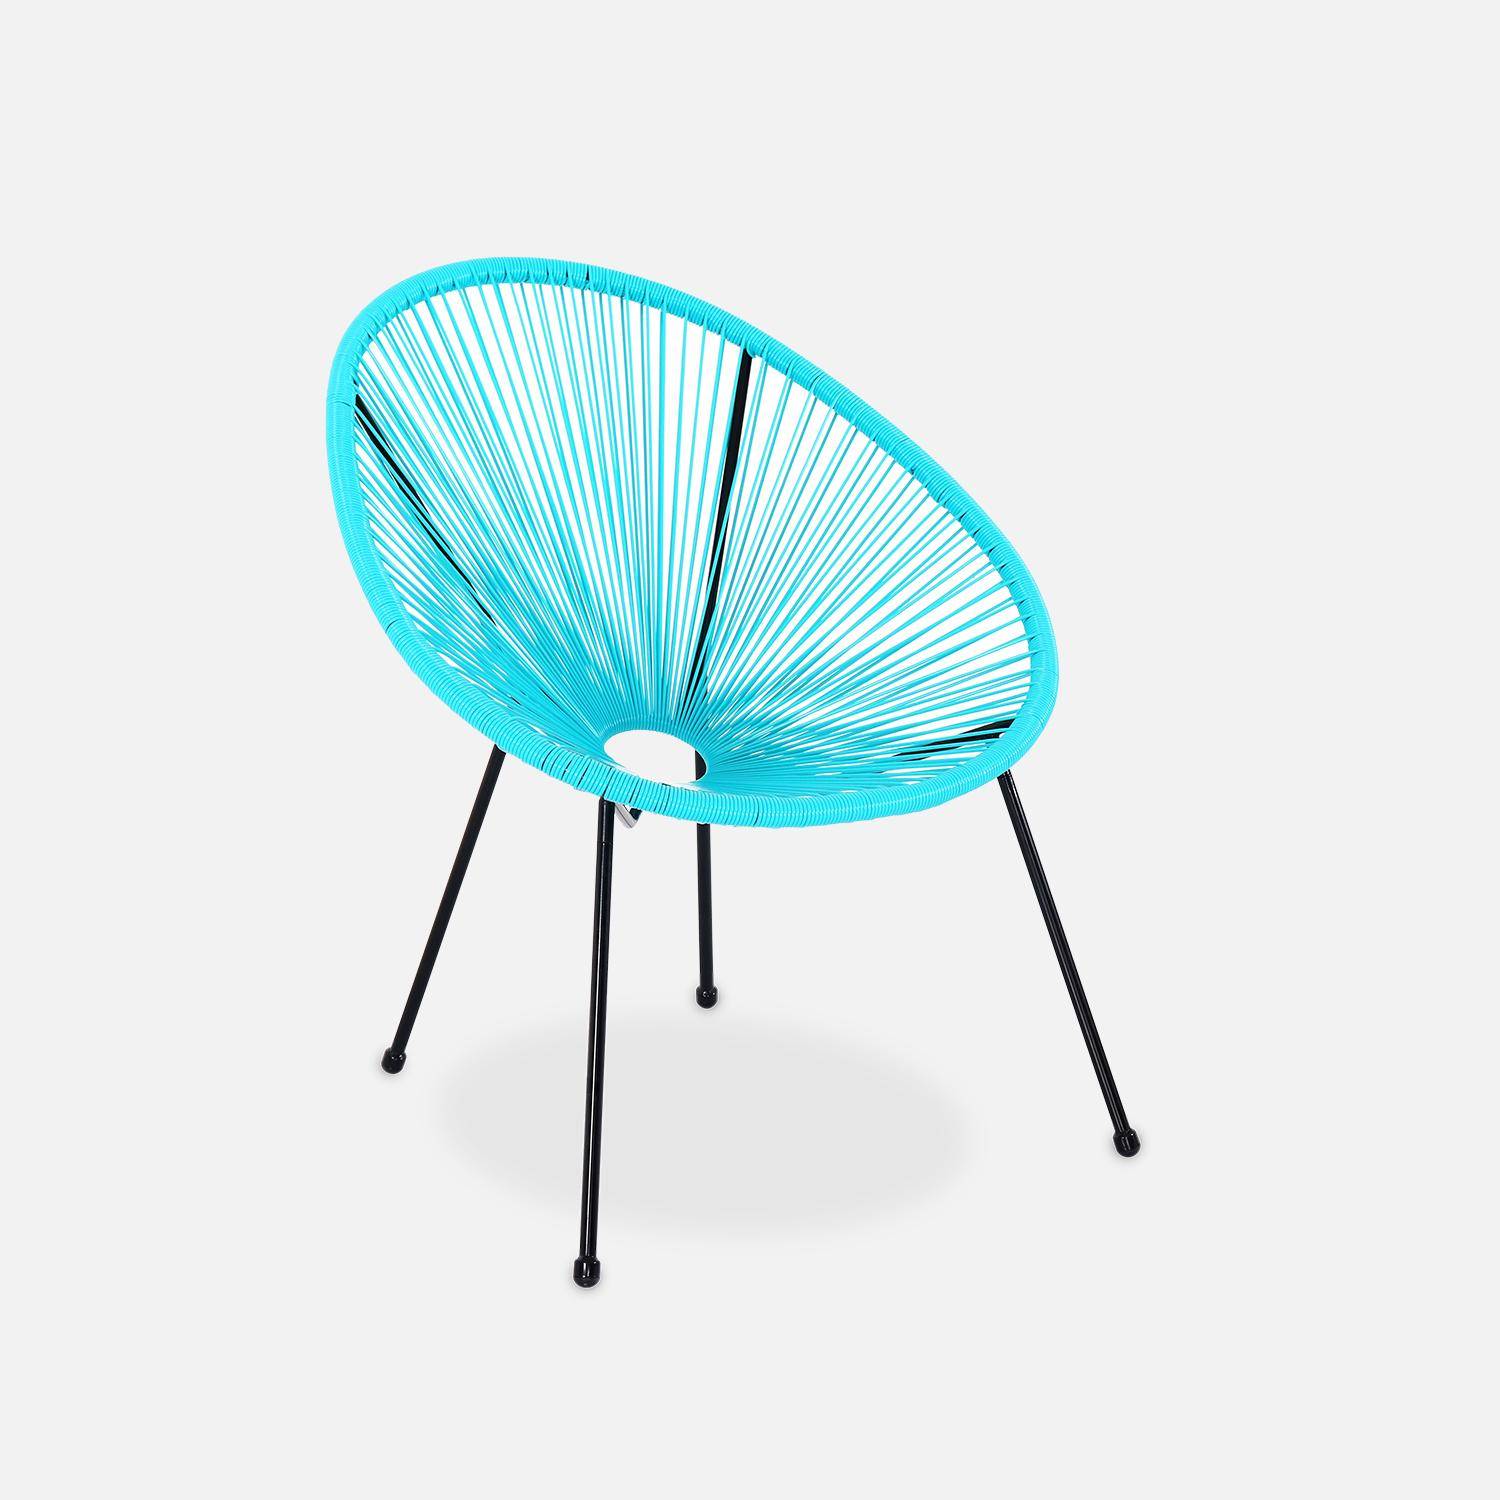 ACAPULCO stoel ei-vormig -Turkoois- Stoel 4 poten retro design, plastic koorden, binnen/buiten Photo2